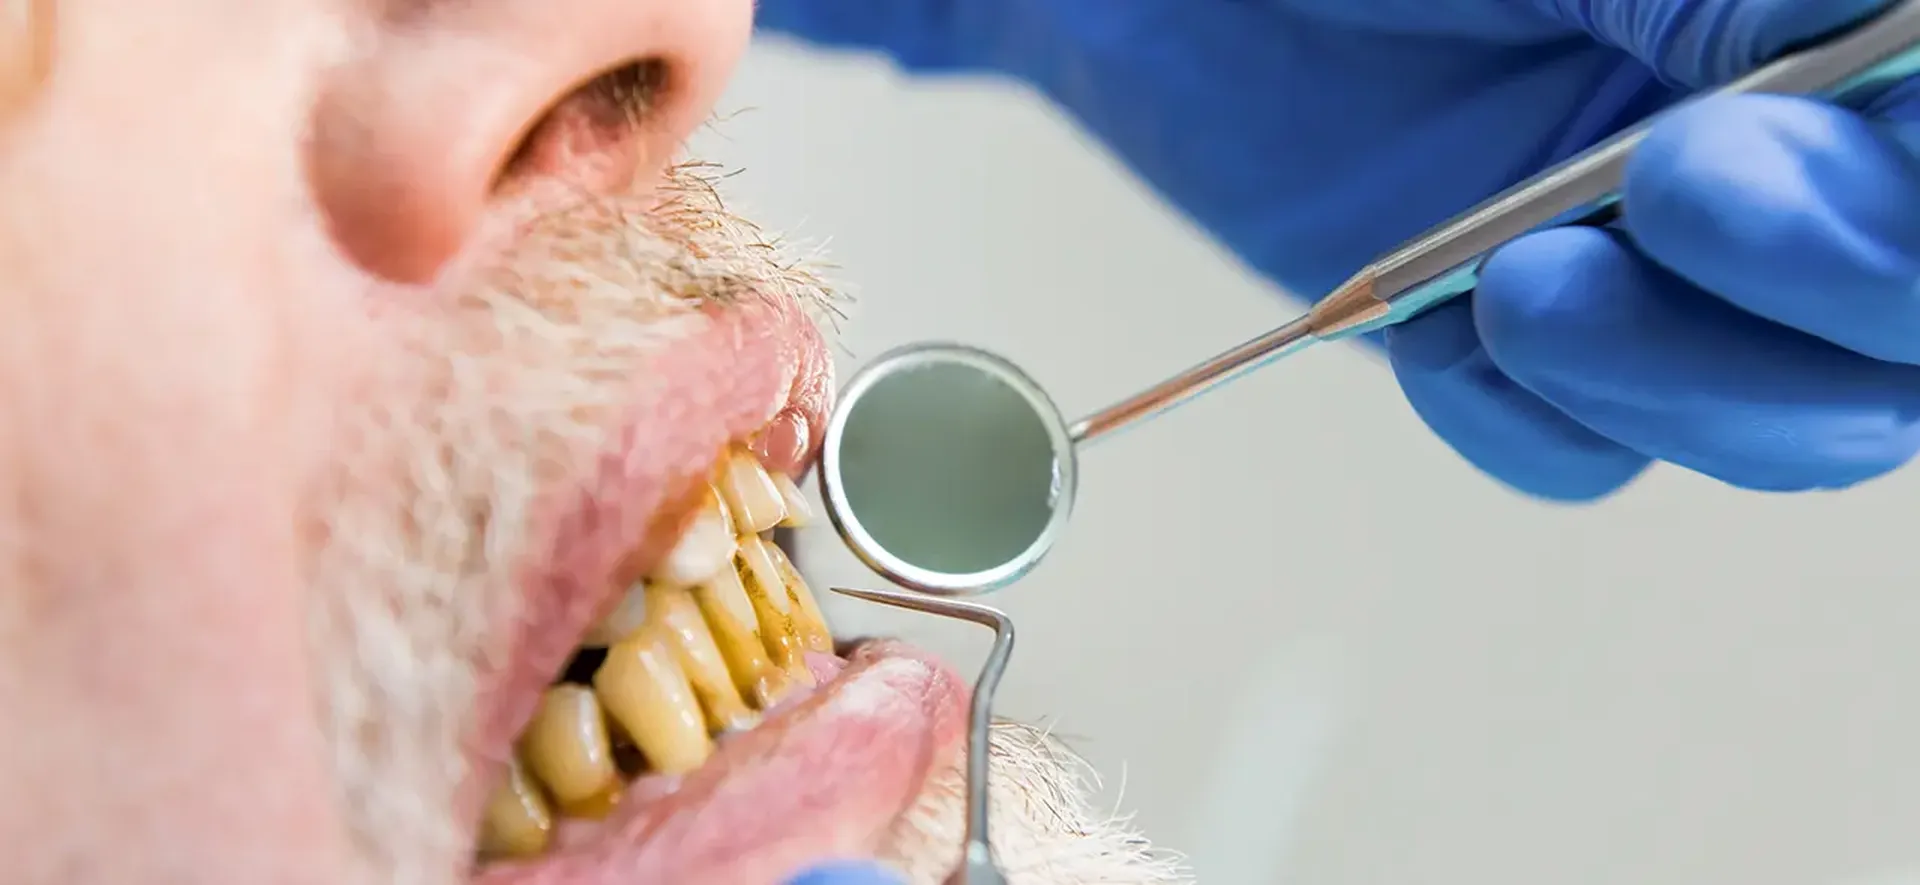 Doença periodontal é uma das principais causas de perda total de dentes; conheça outros tipos de infecções